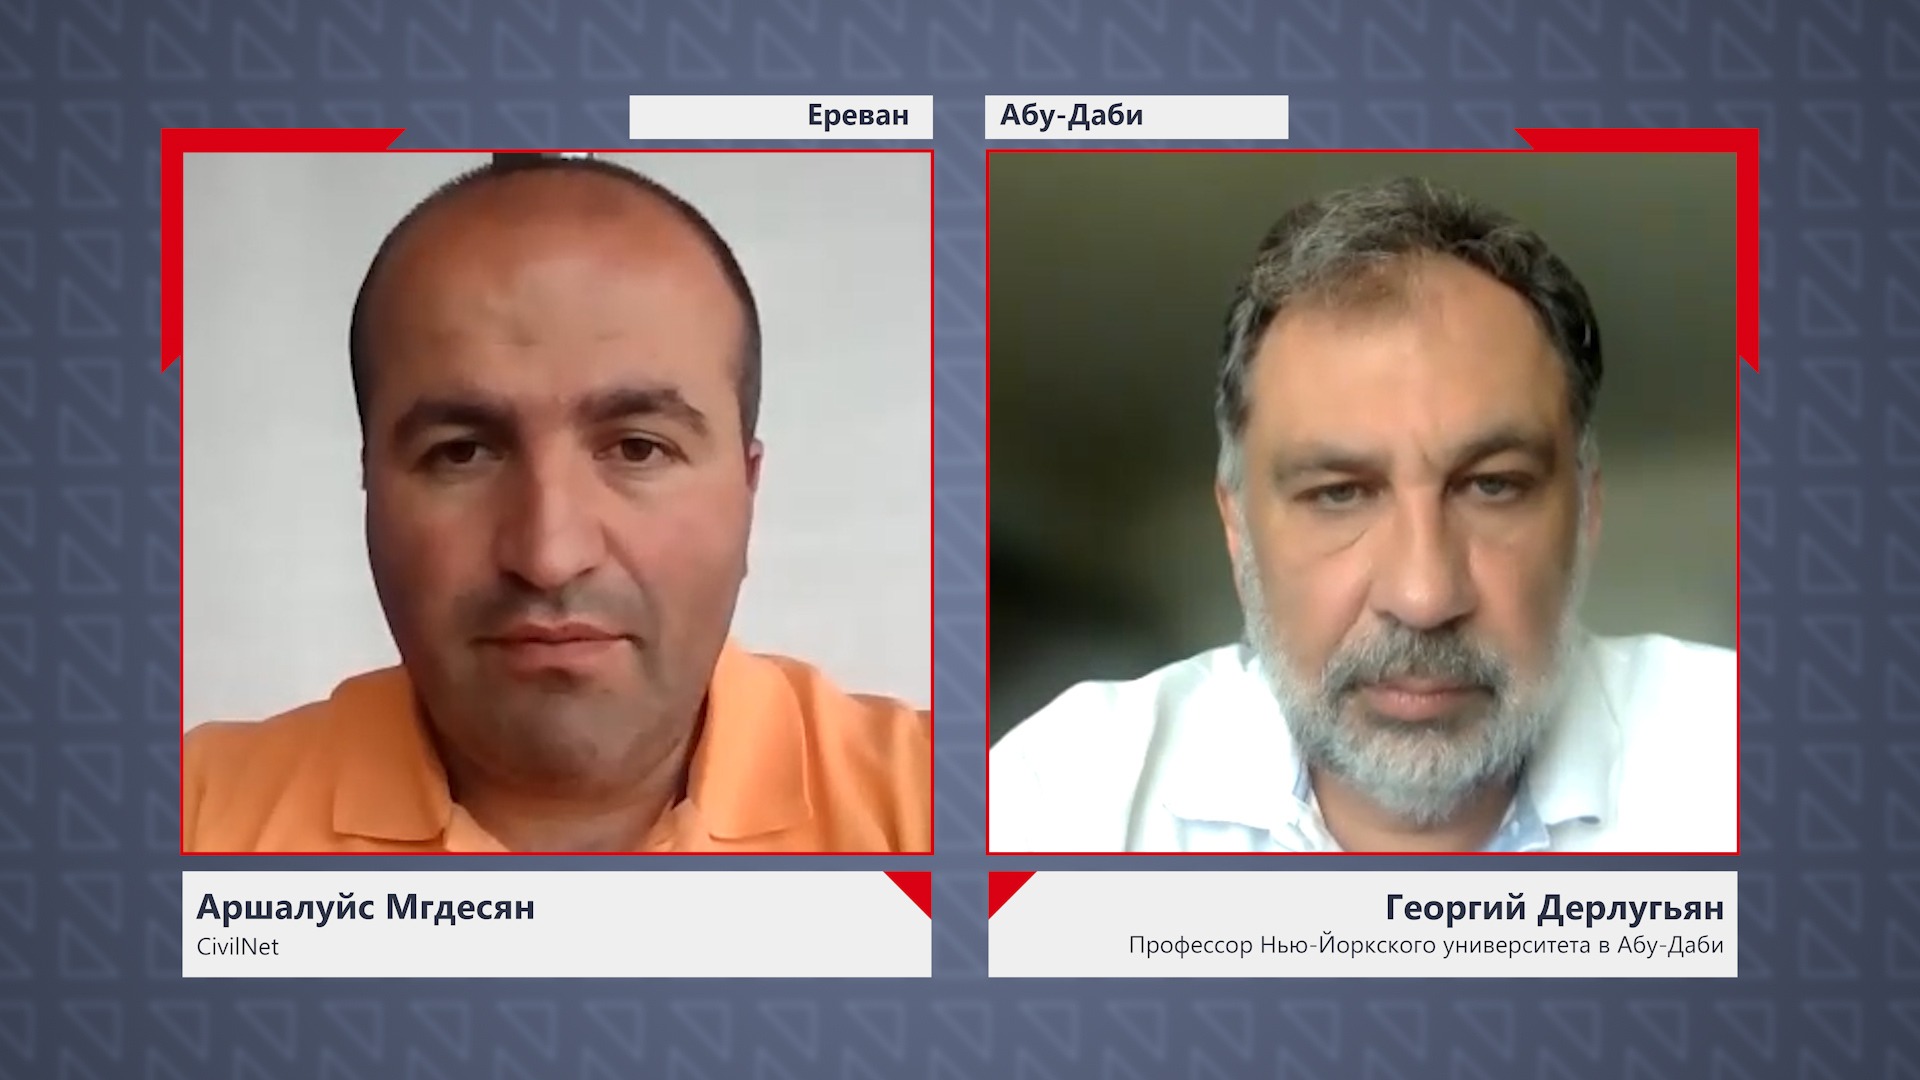 Георгий Дерлугьян: Алиев превращается в Саакашвили для России